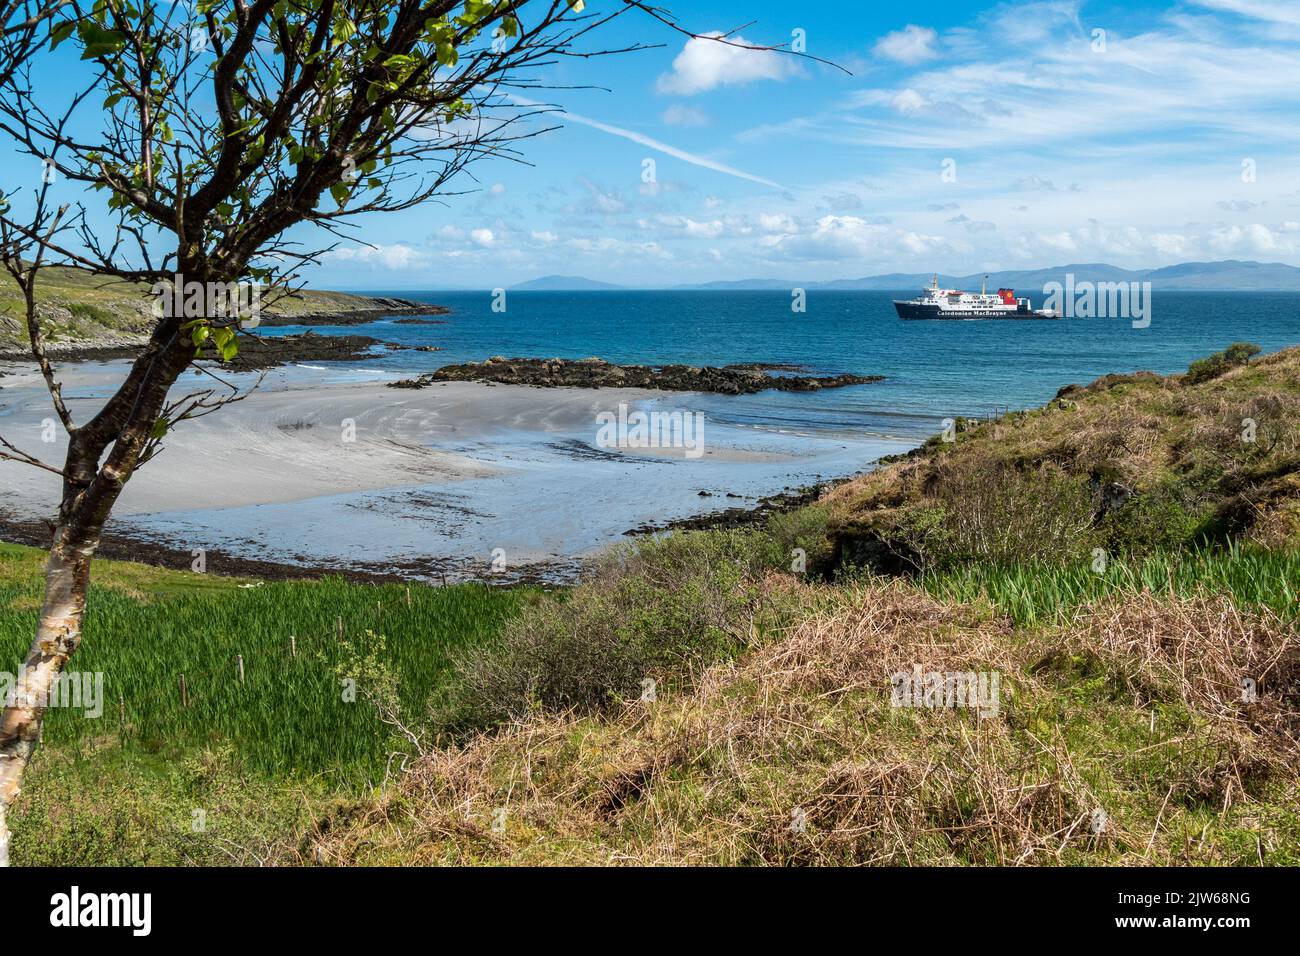 Die kaledonische MacBrayne Fähre 'Hebridean Isles' nähert sich der Insel Colonsay auf dem Weg von Islay, mit sandigen Queen's Bay Strand im Vordergrund. Stockfoto